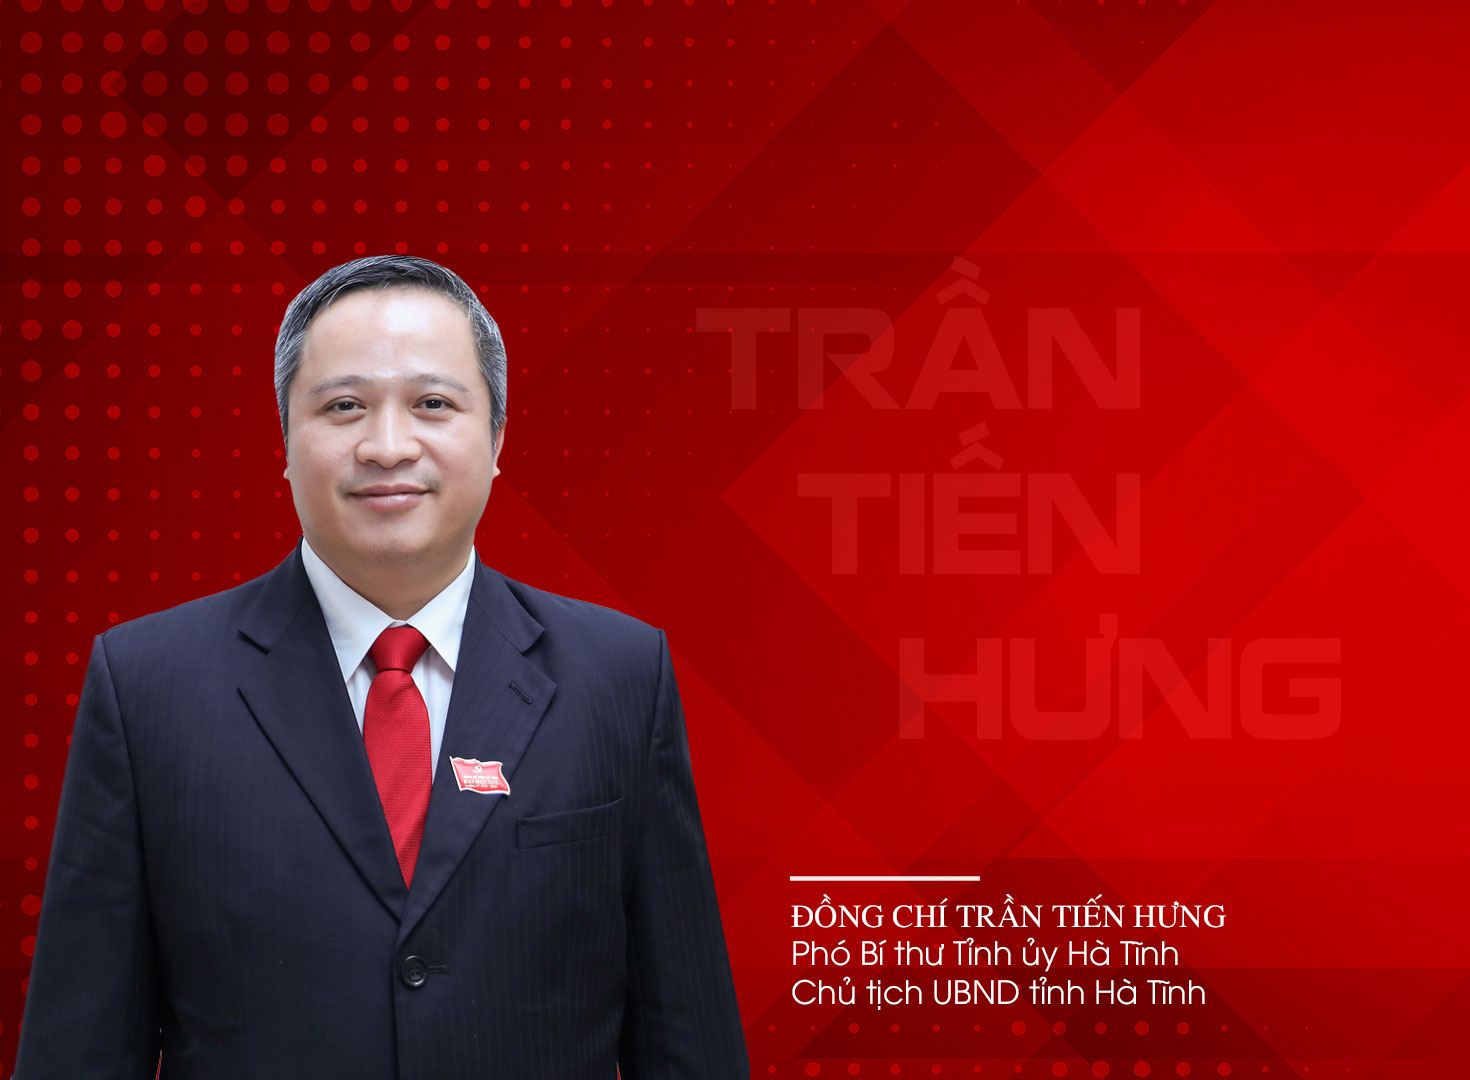 Trần Tiến Hưng - Chủ tịch UBND tỉnh Hà Tĩnh